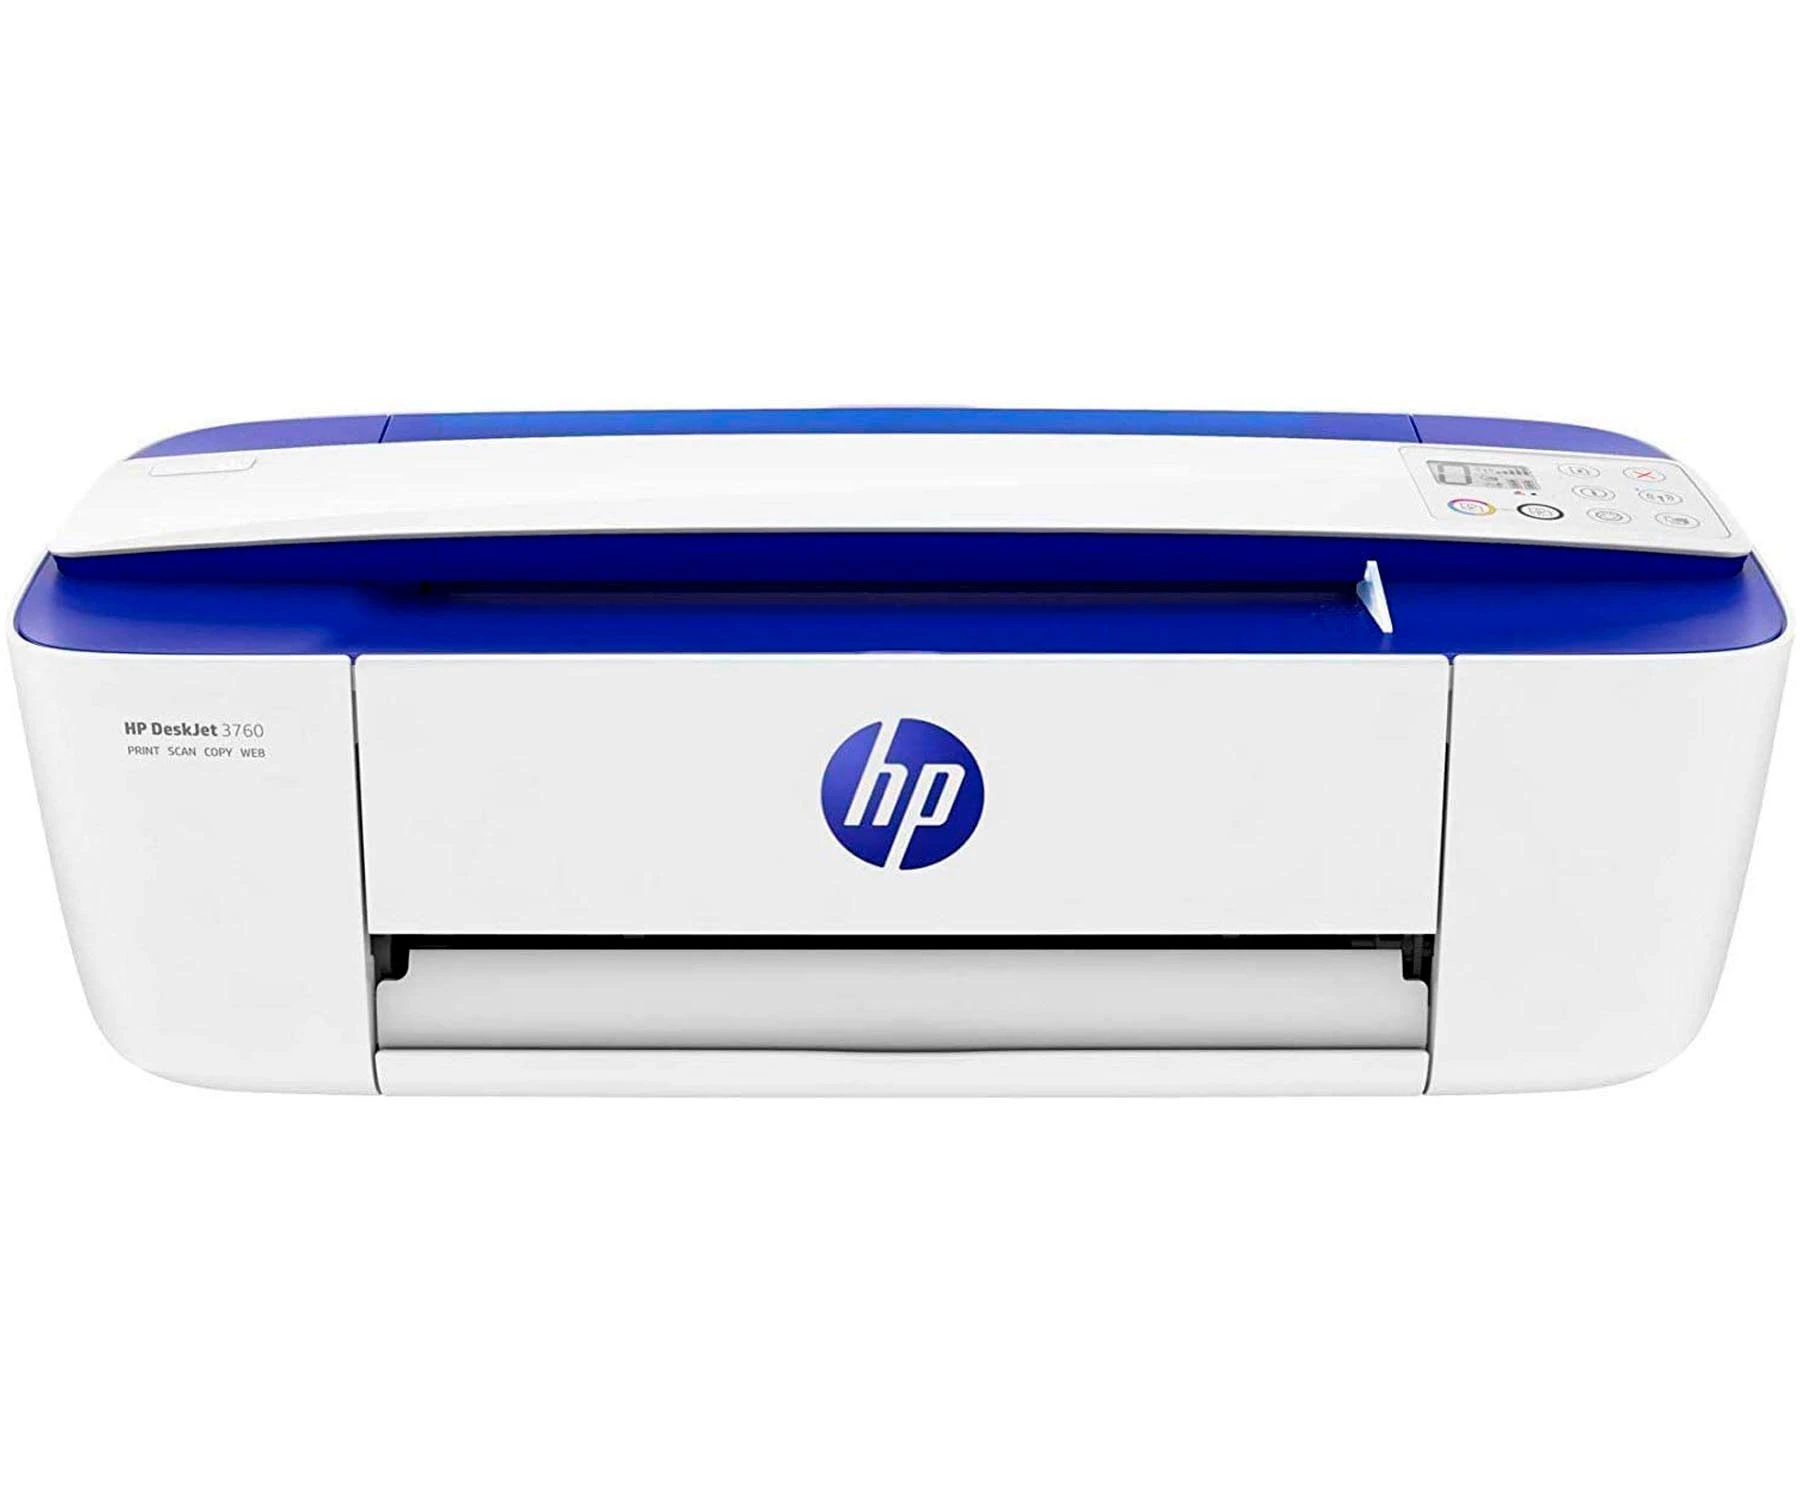 Hp deskjet 3760 impresora wifi multifunción: copia y escáner| - AliExpress